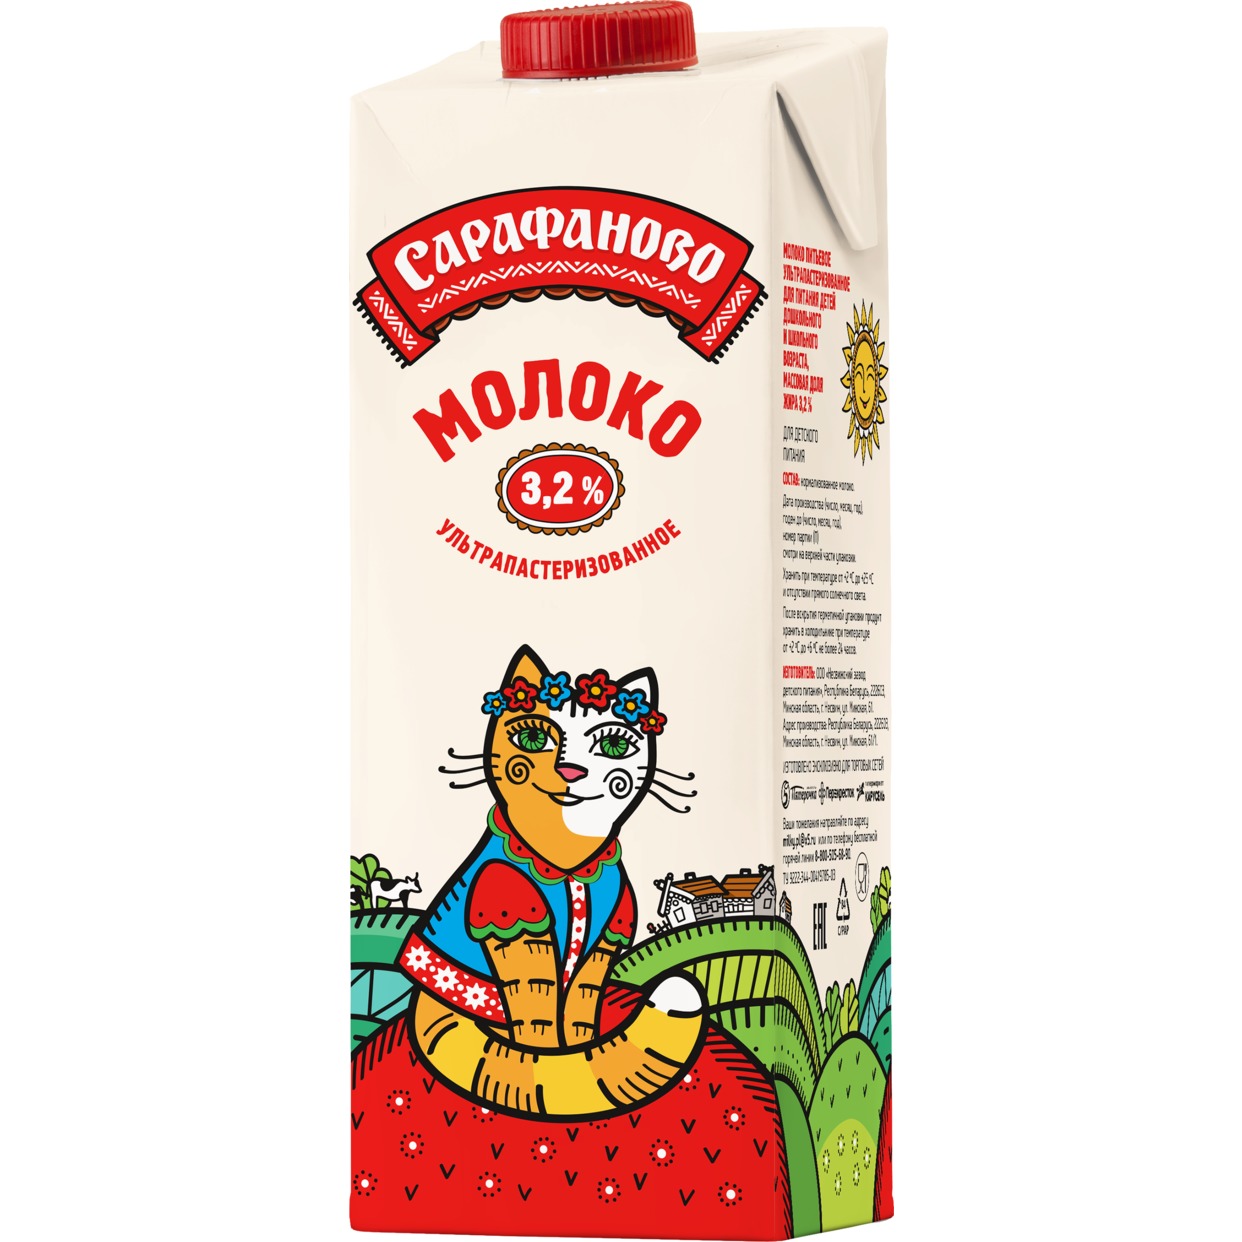 Молоко Сарафаново, ультрапастеризованное, 3,2%, 970 мл по акции в Пятерочке